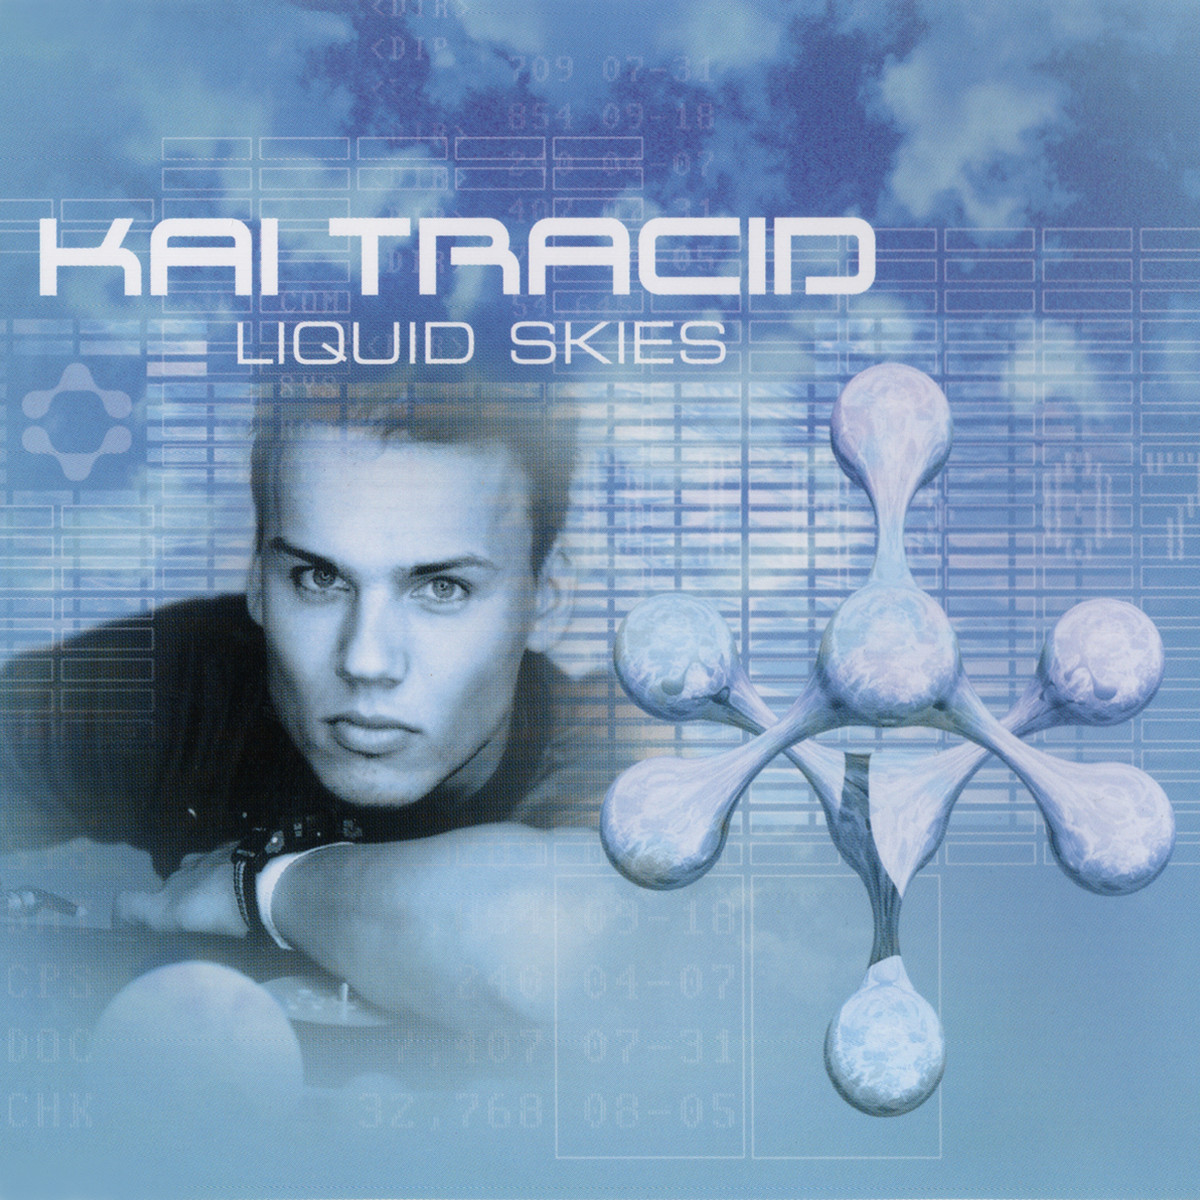 Kai Tracid Liquid Skies album cover: y2k aesthetic